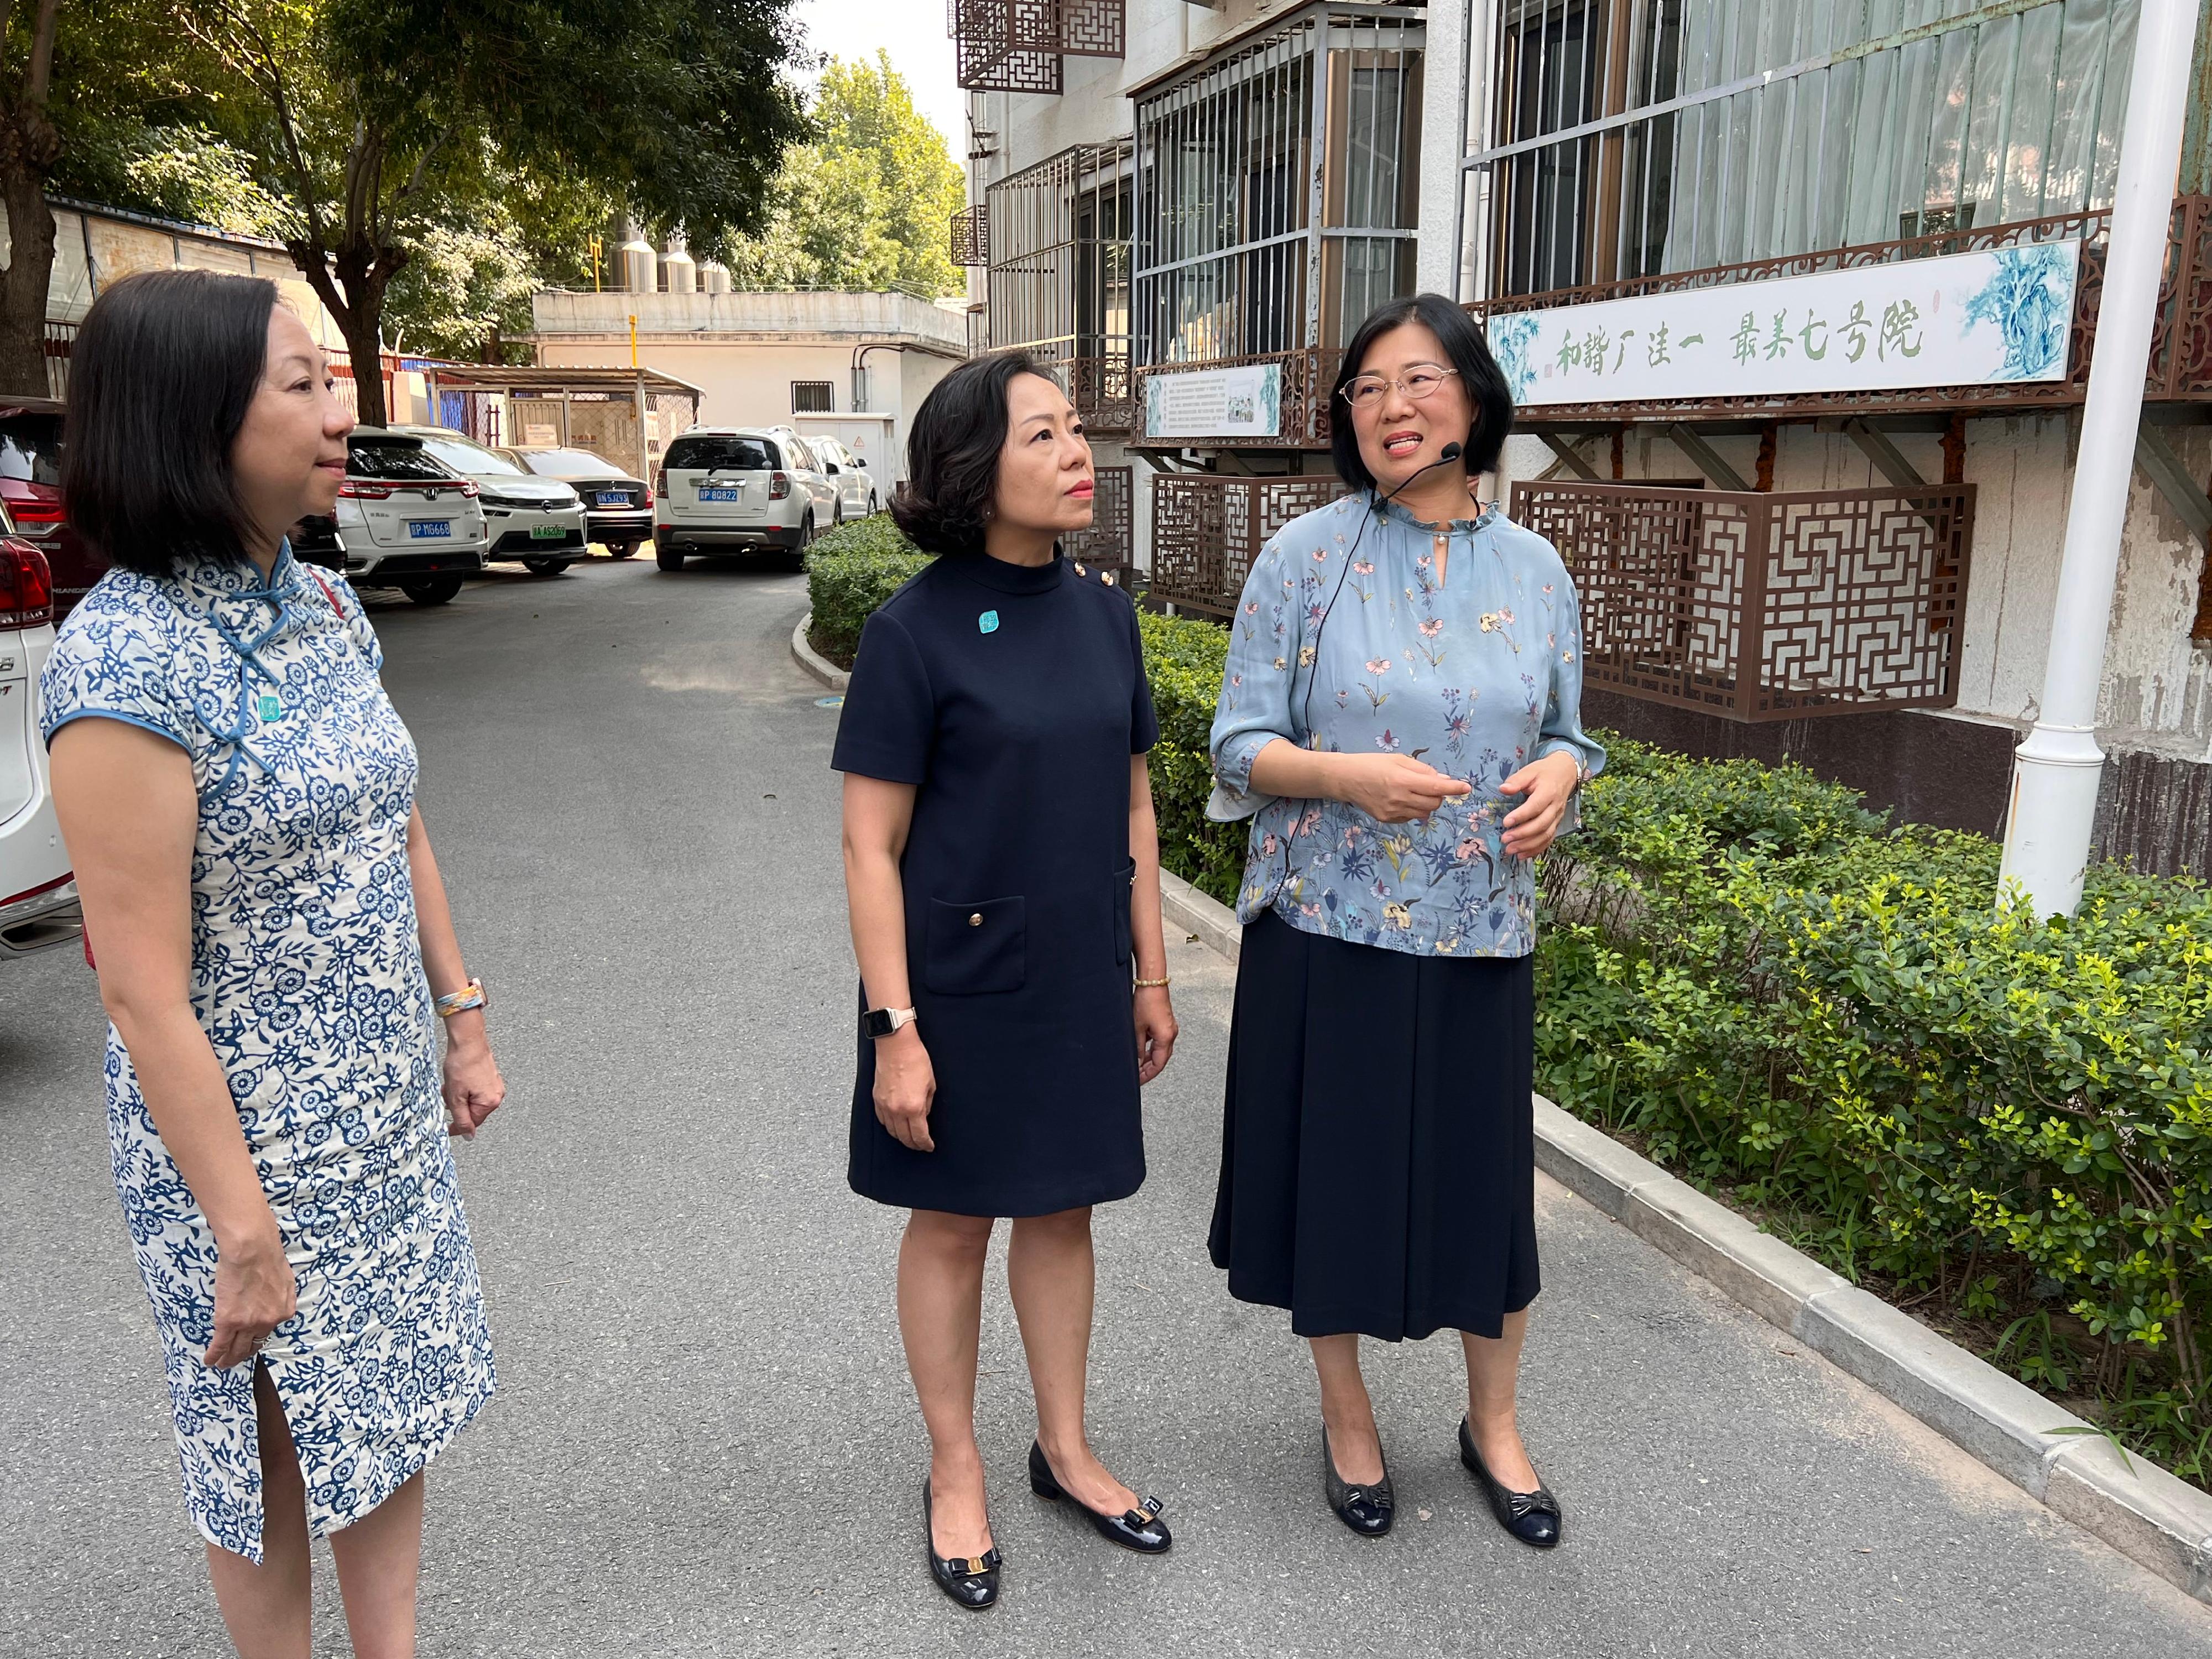 民政及青年事务局（民青局）局长麦美娟今日（七月十八日）继续在北京的访问行程。图示麦美娟（中）和民青局常任秘书长林雪丽（左）参观紫竹院街道。
